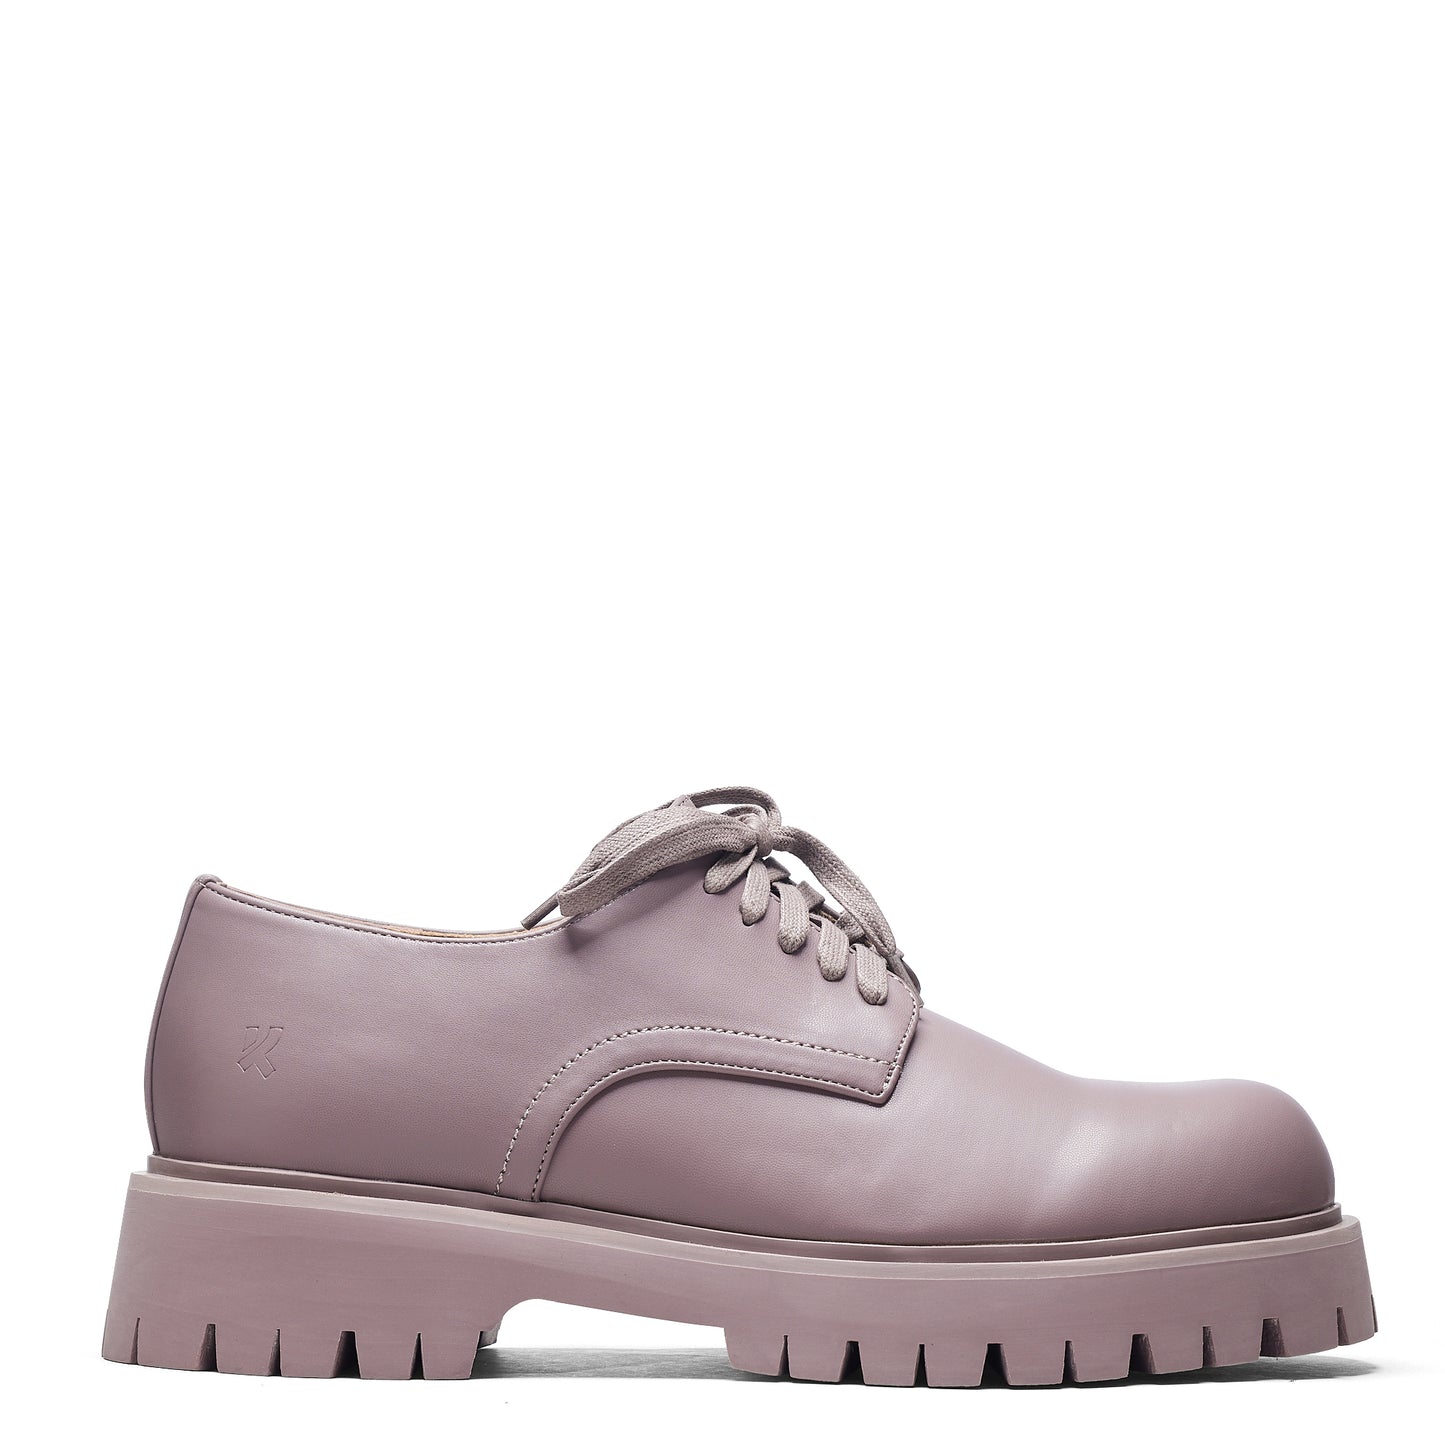 Avian Men's Lace Up Shoes-Mauve - Shoes - KOI Footwear - Purple - Side View